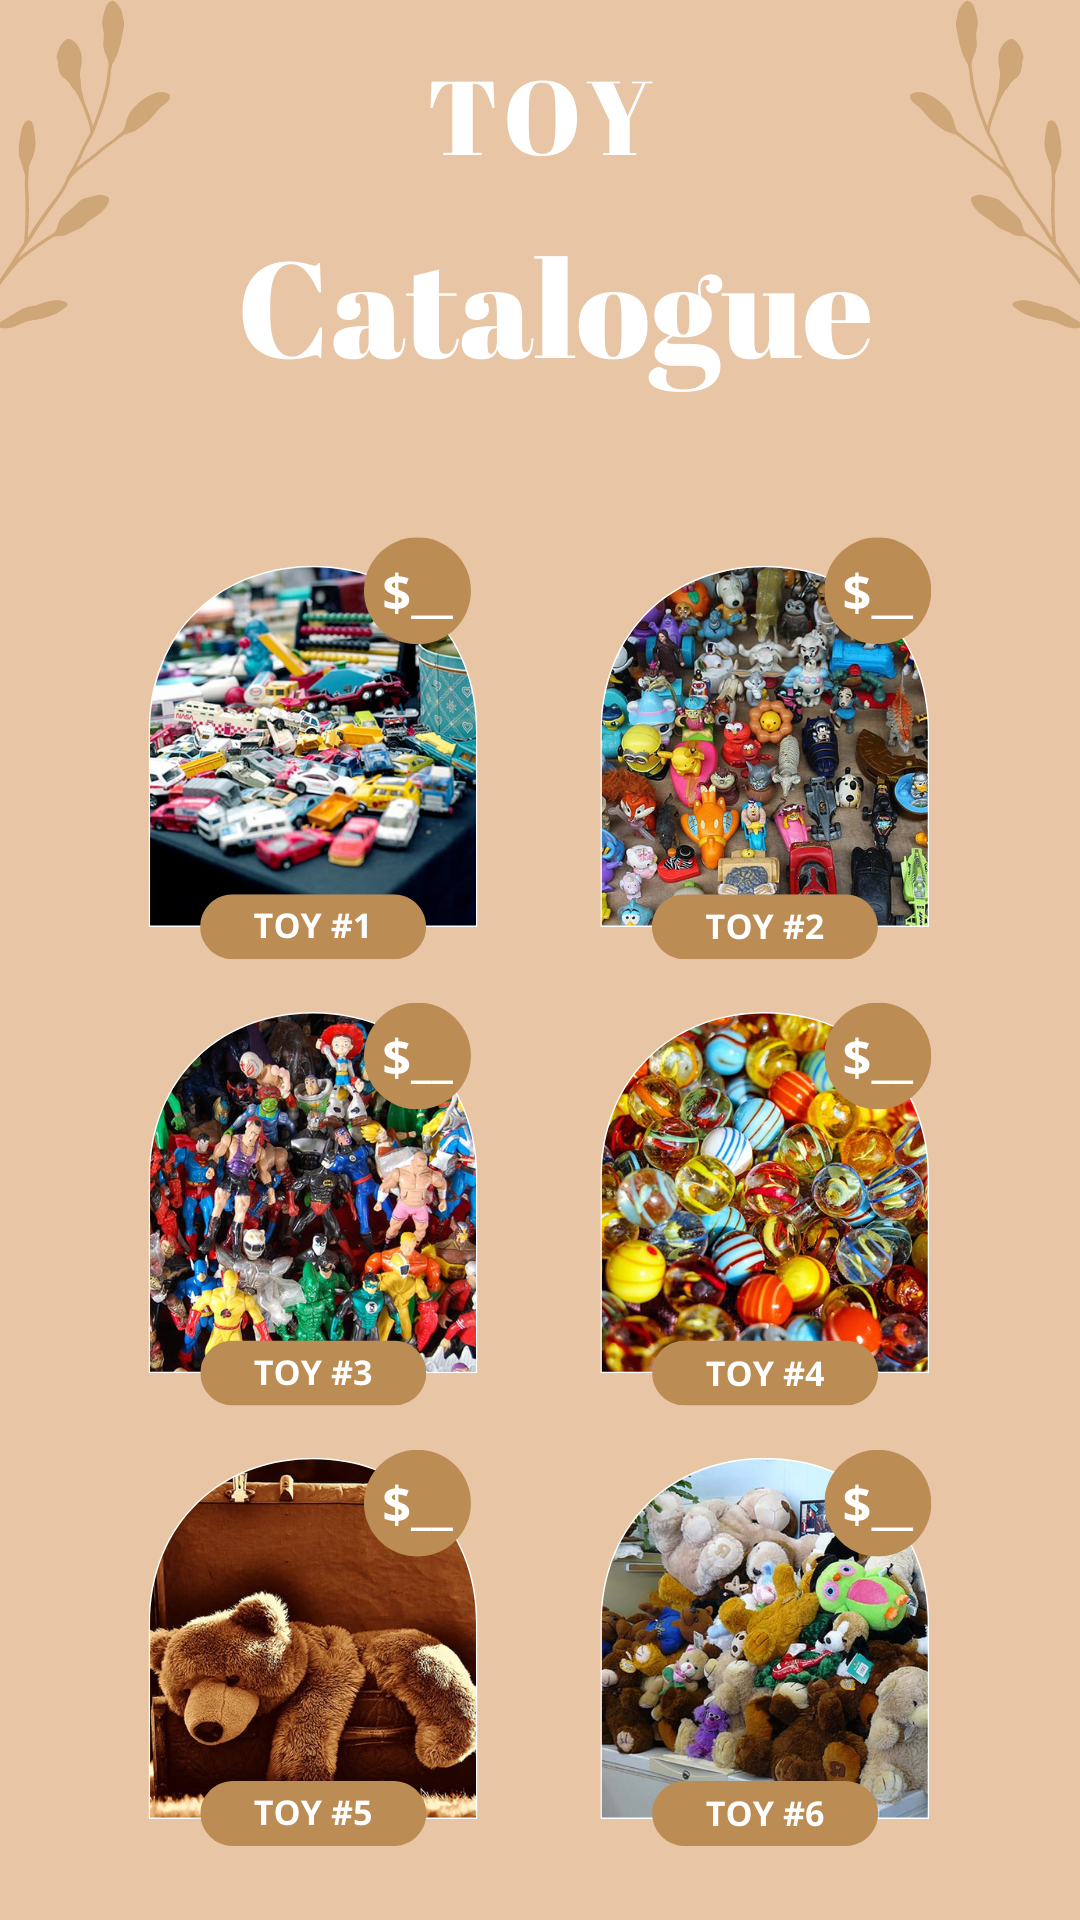 Imagen que muestra un catalogo de juguetes